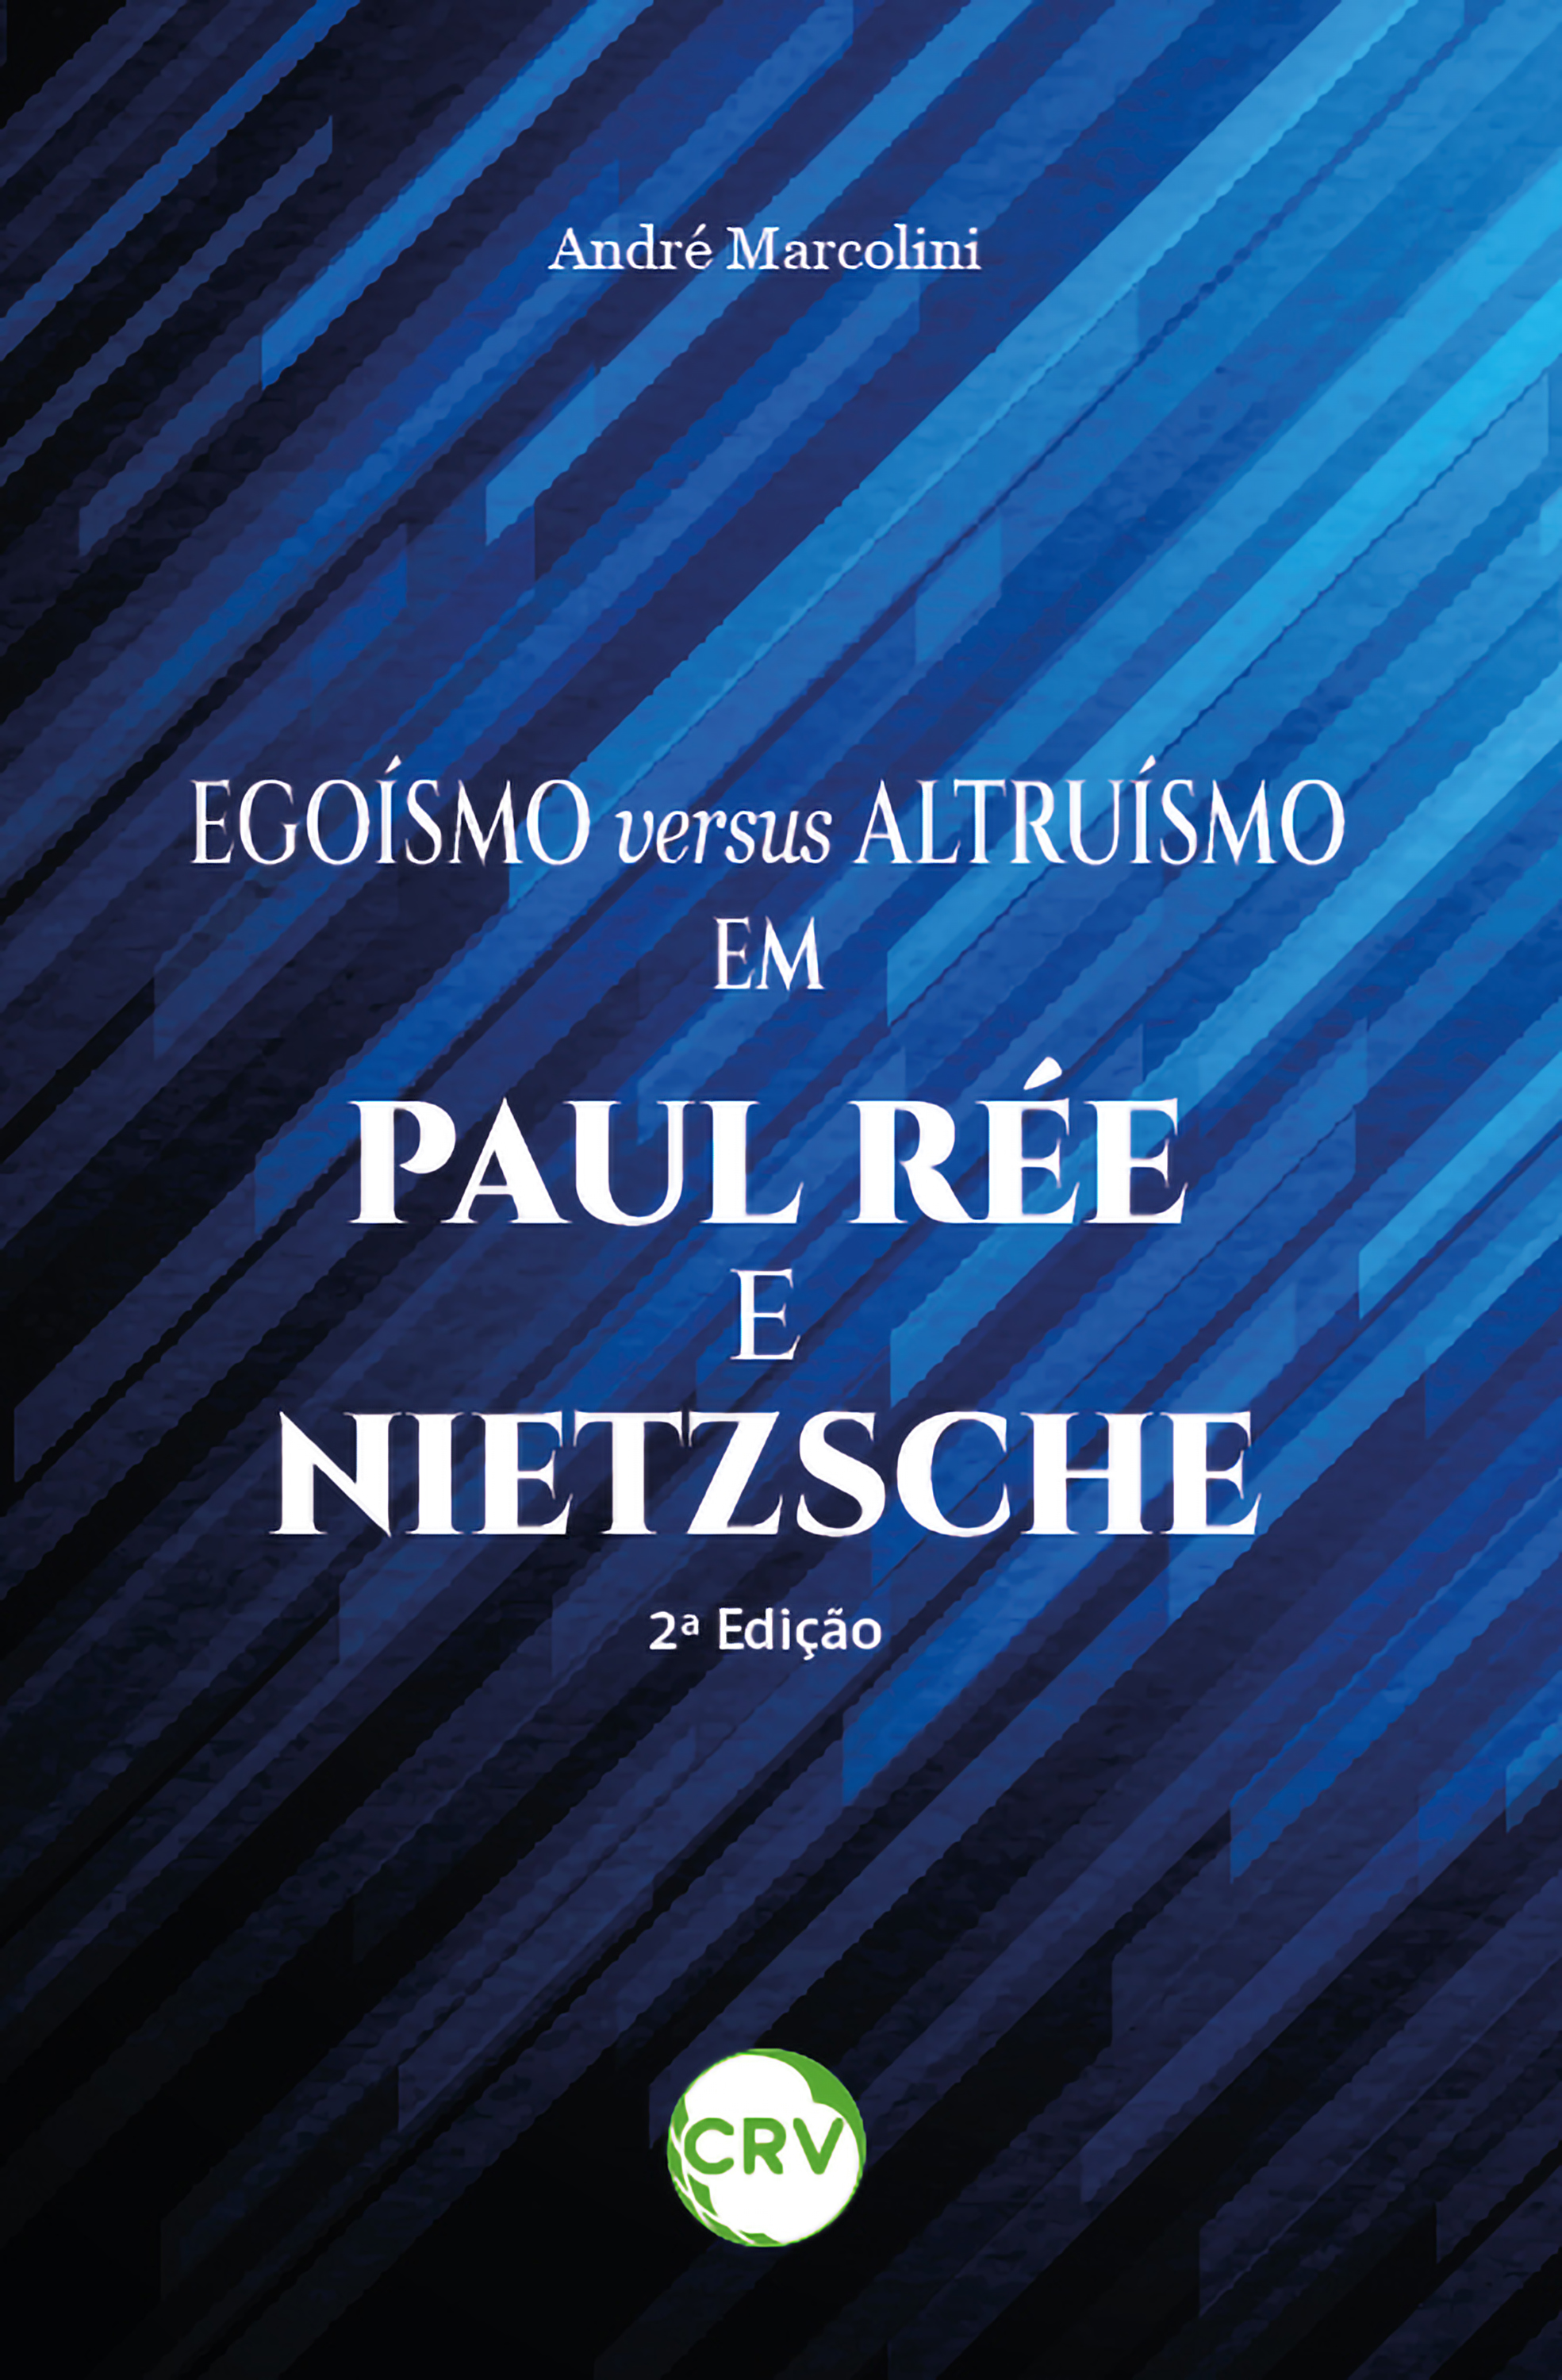 Egoísmo versus altruísmo em Paul Rée e Nietzsche – 2ª Edição